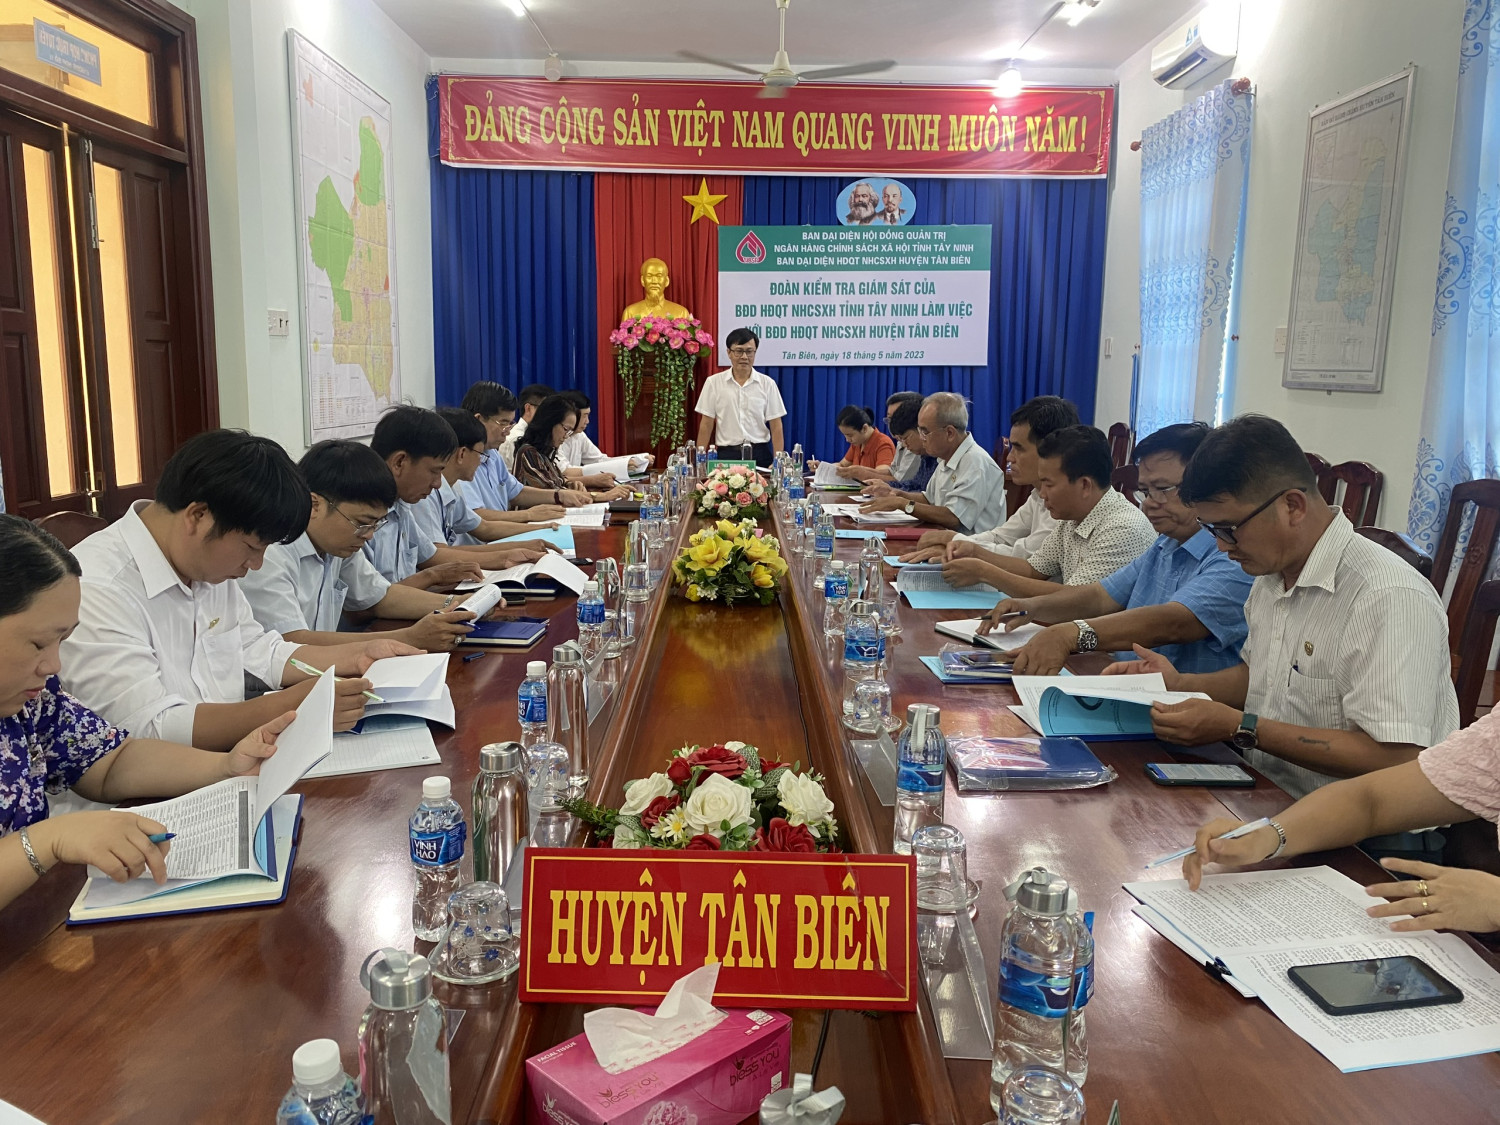 Ðoàn kiểm tra giám sát của Ban đại diện HĐQT NHCSXH tỉnh làm việc tại Tân Biên